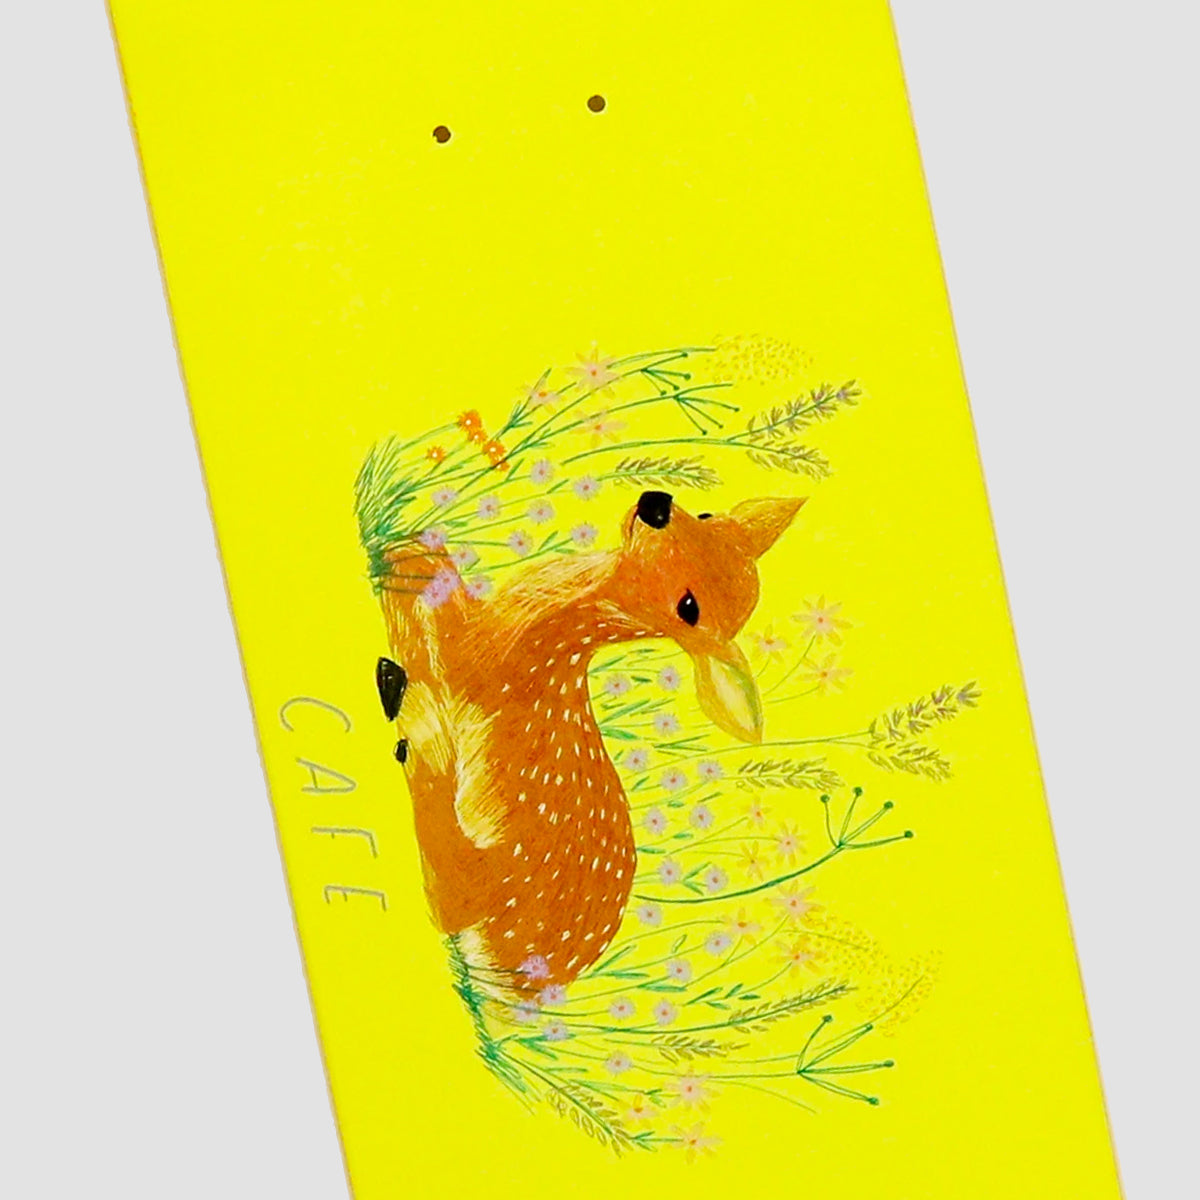 Skateboard Cafe Doe Skateboard Deck Banana Yellow - 8.375"